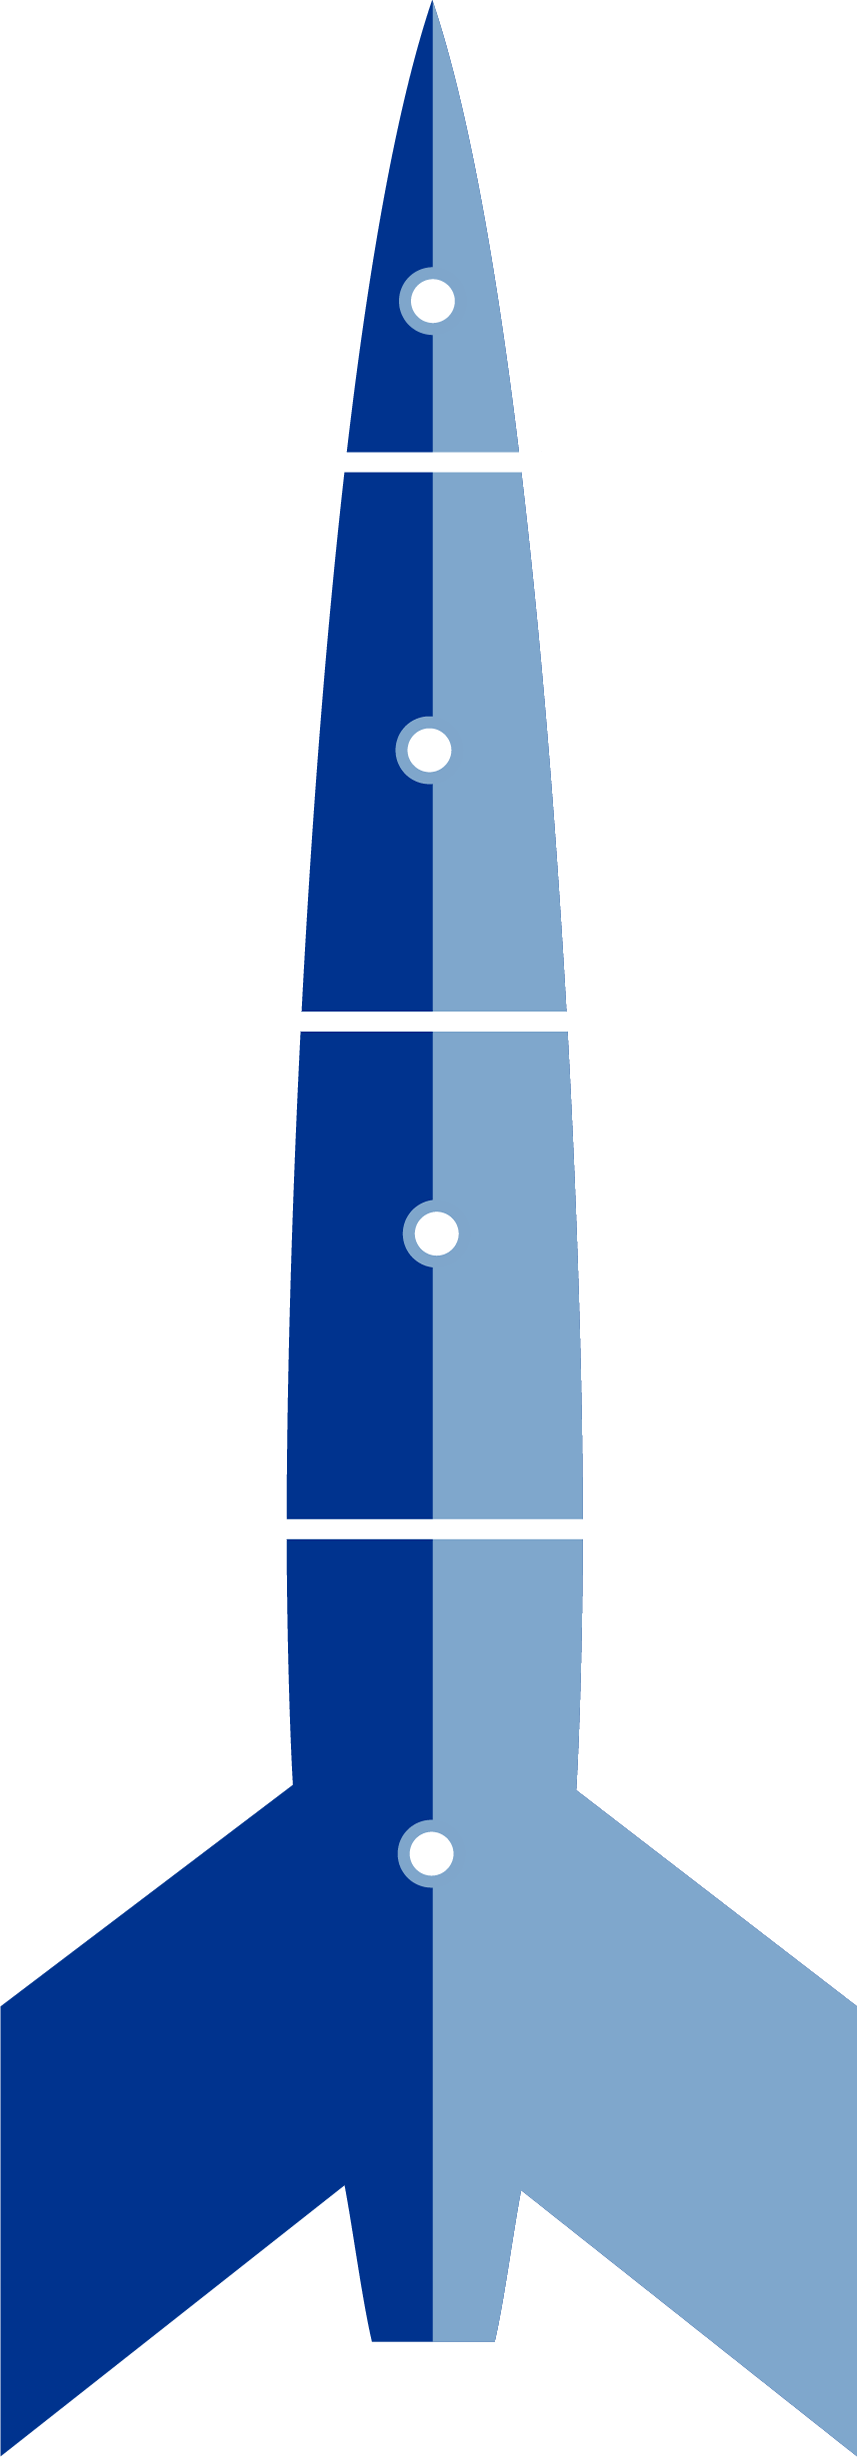 Ilustración de un cohete